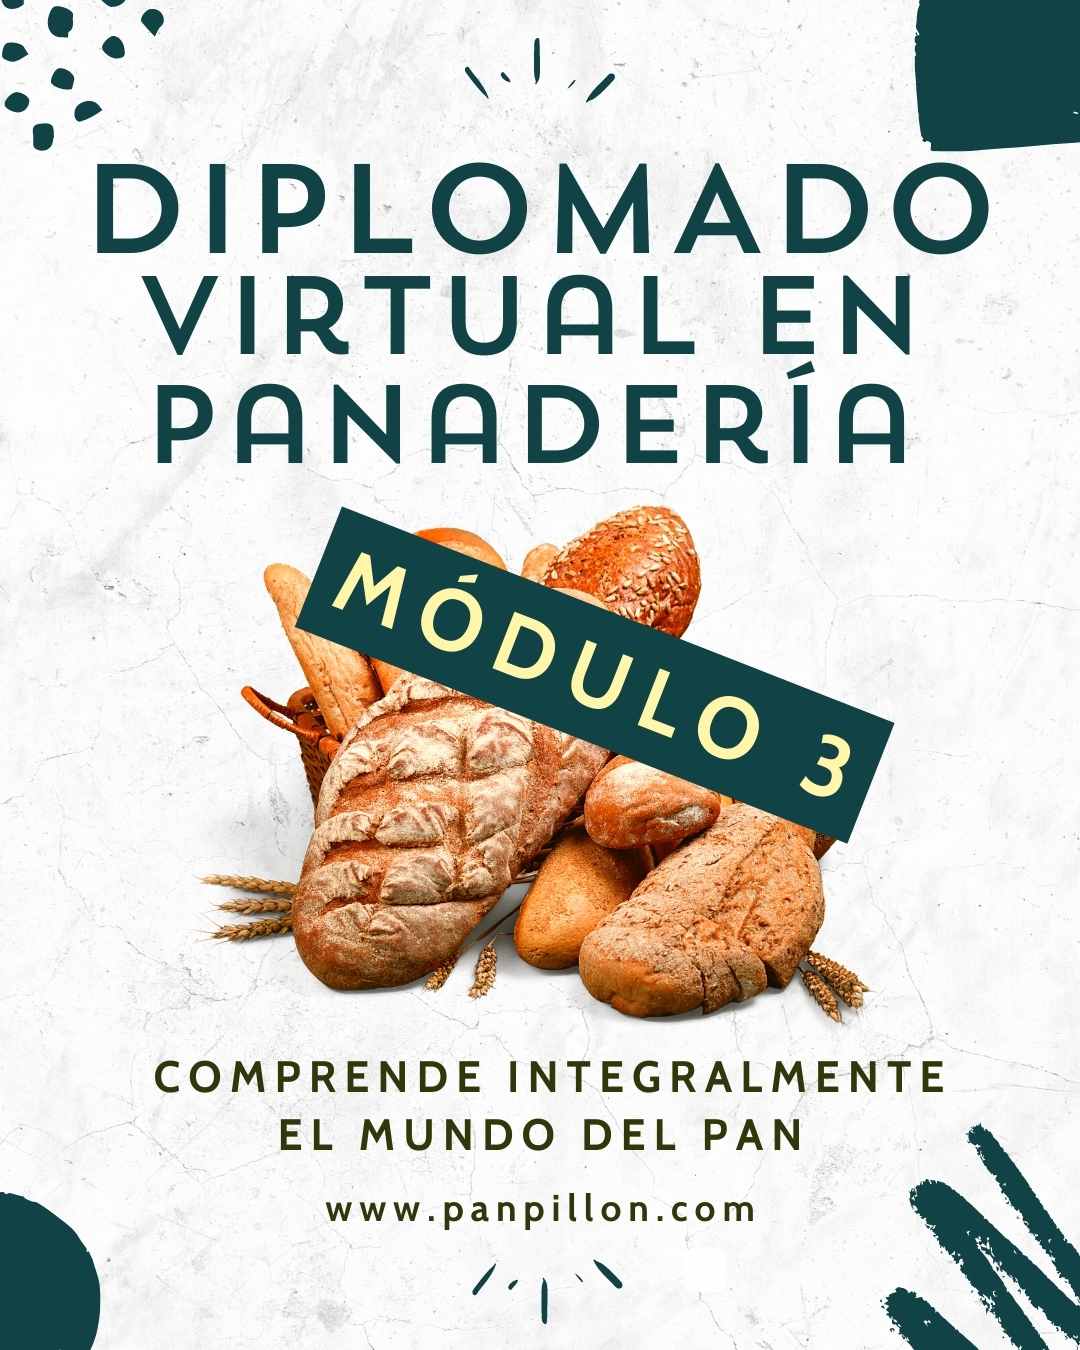 Módulo 3 – Panadería colombiana y método directo (Diplomado virtual en panadería)